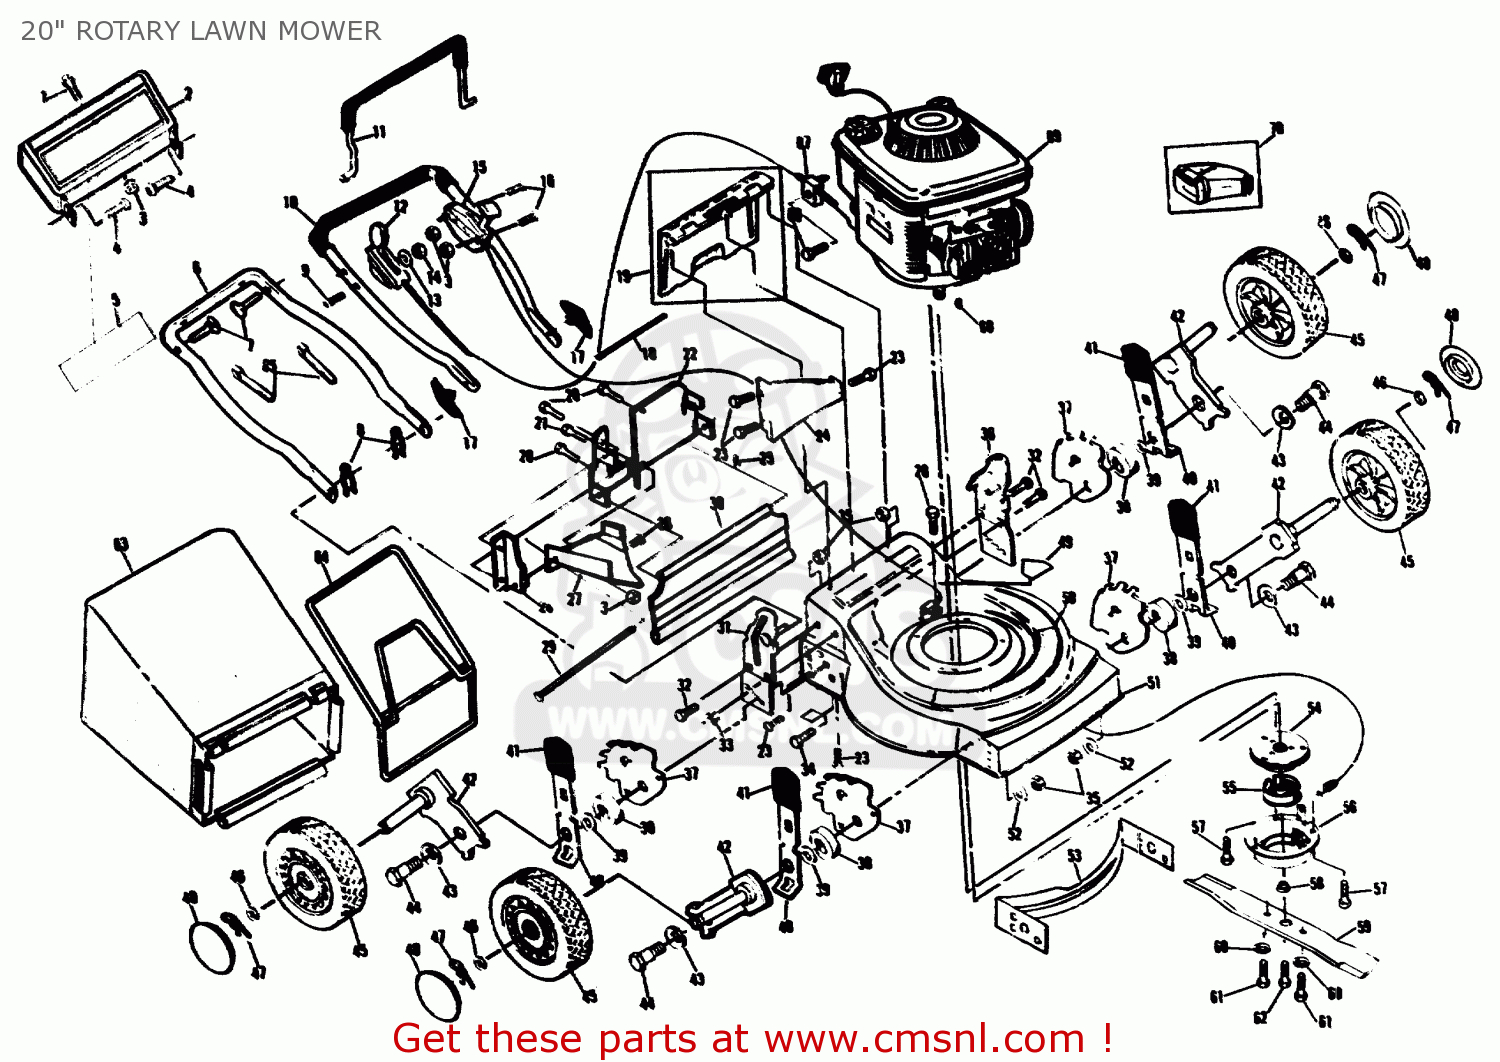 Craftsman Riding Mower Parts Diagram Lawn Mower Schematics Wiring Diagram Local